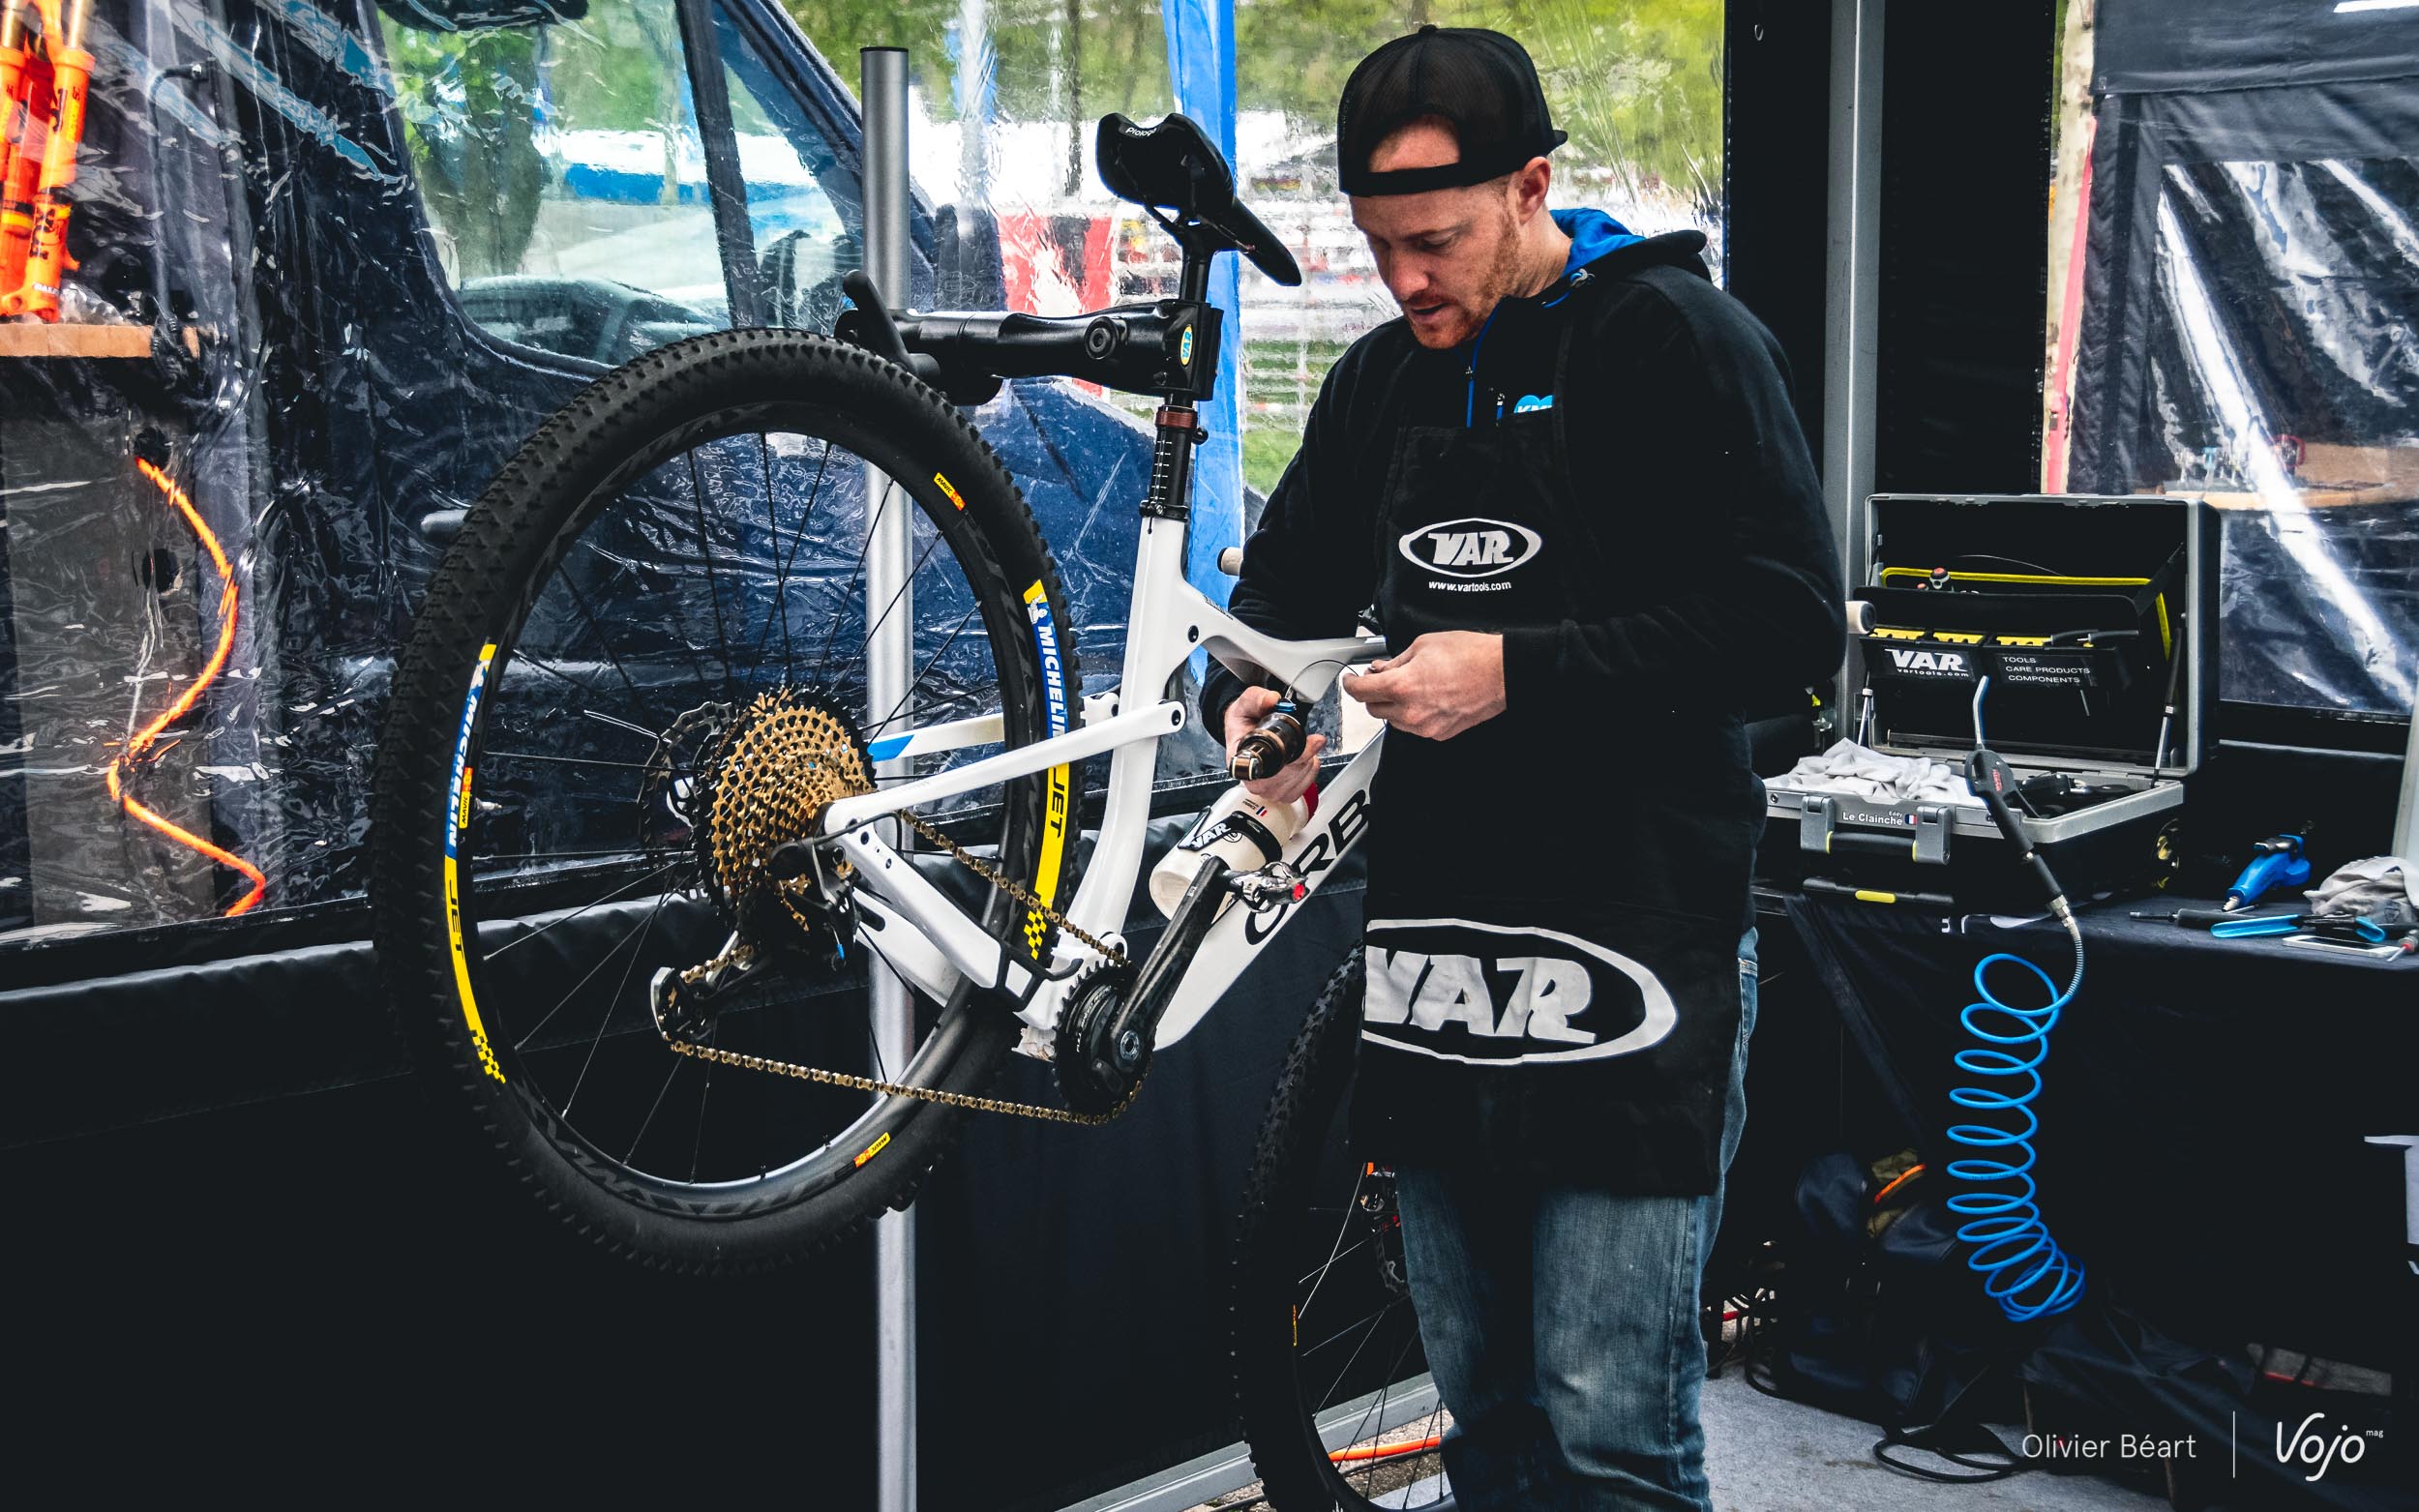 Pro bike check XC 2019 | les plus beaux vélos et nos trouvailles dans les paddocks - Tige télescopique et blocage, difficile équation...